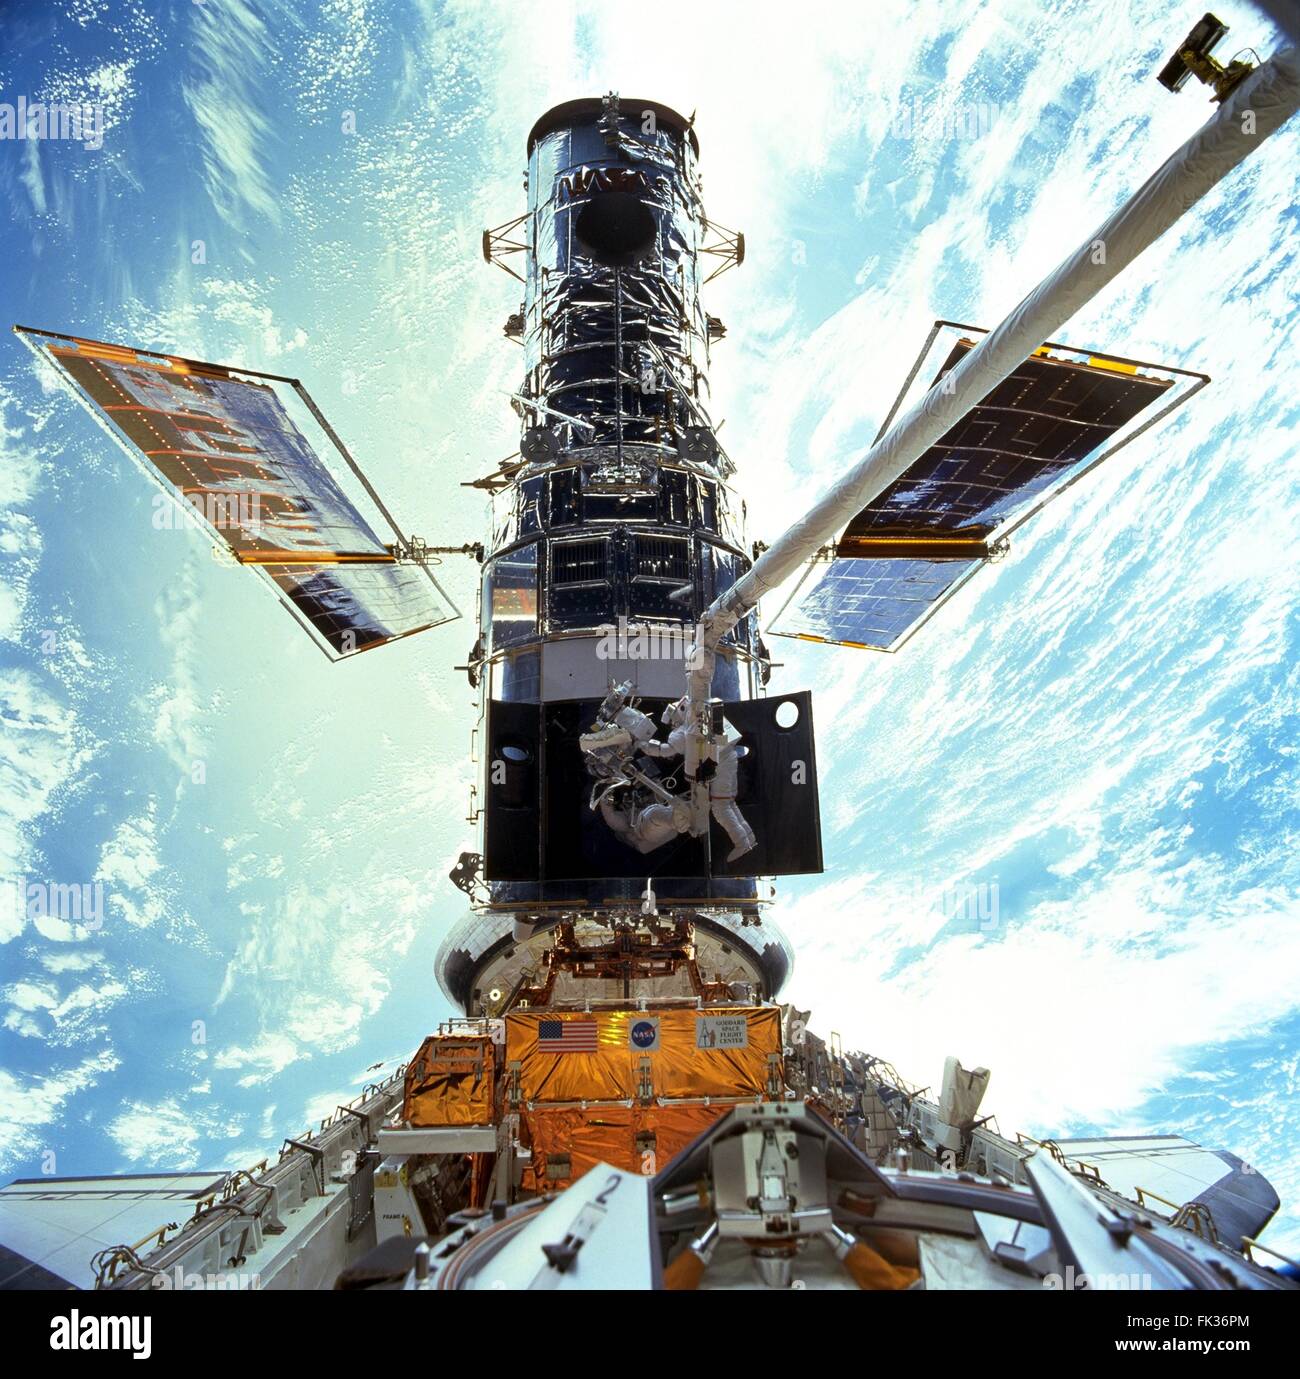 Gli astronauti John Grunsfeld e Steven Smith esegue le riparazioni e aggiornamenti del telescopio spaziale Hubble nel corso STS-125 attività extravehicular Dicembre 22, 1999 in orbita intorno alla terra. Foto Stock